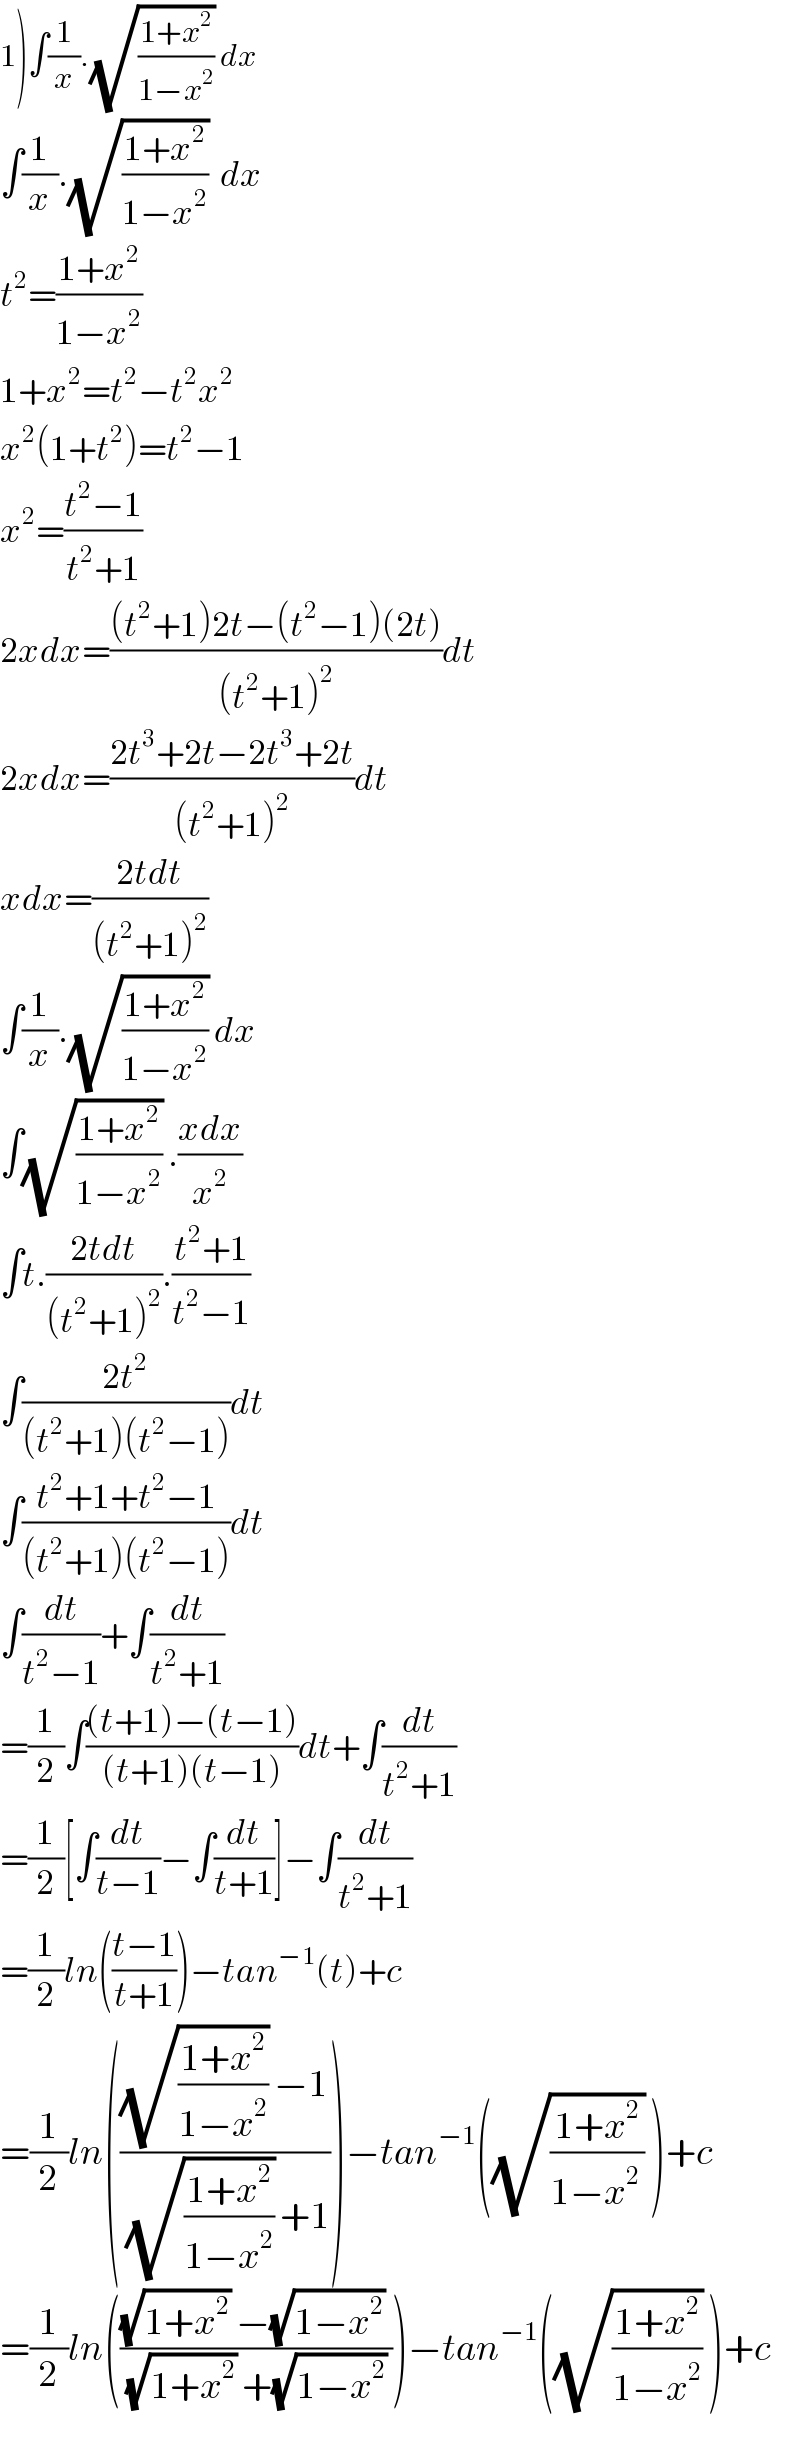 1)∫(1/x).(√((1+x^2 )/(1−x^2 ))) dx  ∫(1/x).(√((1+x^2 )/(1−x^2 )))  dx  t^2 =((1+x^2 )/(1−x^2 ))  1+x^2 =t^2 −t^2 x^2   x^2 (1+t^2 )=t^2 −1  x^2 =((t^2 −1)/(t^2 +1))  2xdx=(((t^2 +1)2t−(t^2 −1)(2t))/((t^2 +1)^2 ))dt  2xdx=((2t^3 +2t−2t^3 +2t)/((t^2 +1)^2 ))dt  xdx=((2tdt)/((t^2 +1)^2 ))  ∫(1/x).(√((1+x^2 )/(1−x^2 ))) dx  ∫(√((1+x^2 )/(1−x^2 ))) .((xdx)/x^2 )  ∫t.((2tdt)/((t^2 +1)^2 )).((t^2 +1)/(t^2 −1))  ∫((2t^2 )/((t^2 +1)(t^2 −1)))dt  ∫((t^2 +1+t^2 −1)/((t^2 +1)(t^2 −1)))dt  ∫(dt/(t^2 −1))+∫(dt/(t^2 +1))  =(1/2)∫(((t+1)−(t−1))/((t+1)(t−1)))dt+∫(dt/(t^2 +1))  =(1/2)[∫(dt/(t−1))−∫(dt/(t+1))]−∫(dt/(t^2 +1))  =(1/2)ln(((t−1)/(t+1)))−tan^(−1) (t)+c  =(1/2)ln((((√((1+x^2 )/(1−x^2 ))) −1)/((√((1+x^2 )/(1−x^2 ))) +1)))−tan^(−1) ((√((1+x^2 )/(1−x^(2 ) ))) )+c  =(1/2)ln((((√(1+x^2 )) −(√(1−x^2 )) )/((√(1+x^2 )) +(√(1−x^2 )) )))−tan^(−1) ((√((1+x^2 )/(1−x^2 ))) )+c  